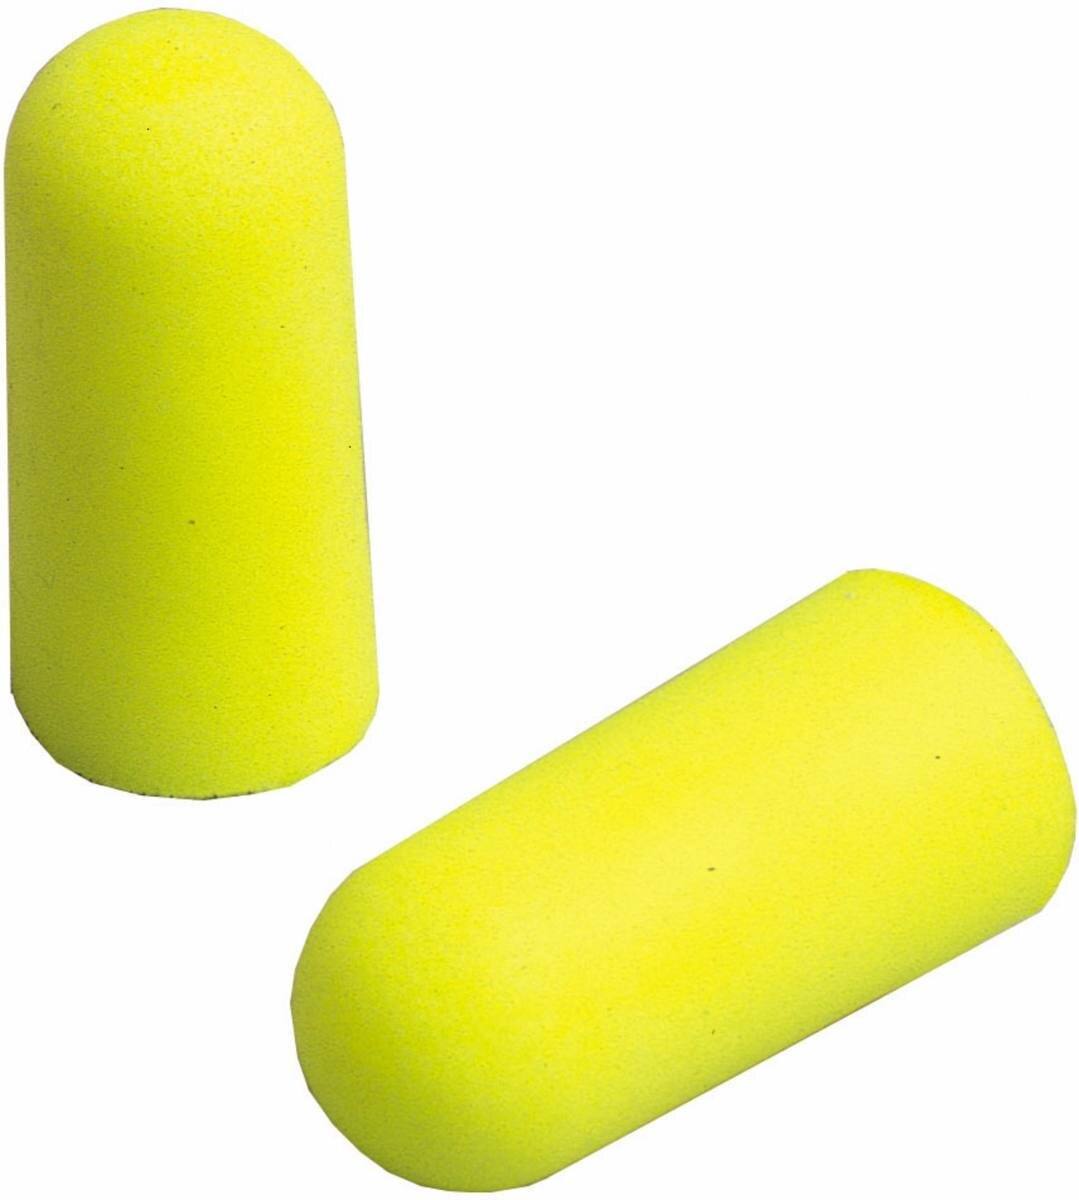 3M E-A-R Neones Amarillos Blandos, poliuretano, amarillo neón, 5 pares embalados en bolsa de plástico resellable con solapa de cartón (euroagujero), SNR=36 dB, ES01001S